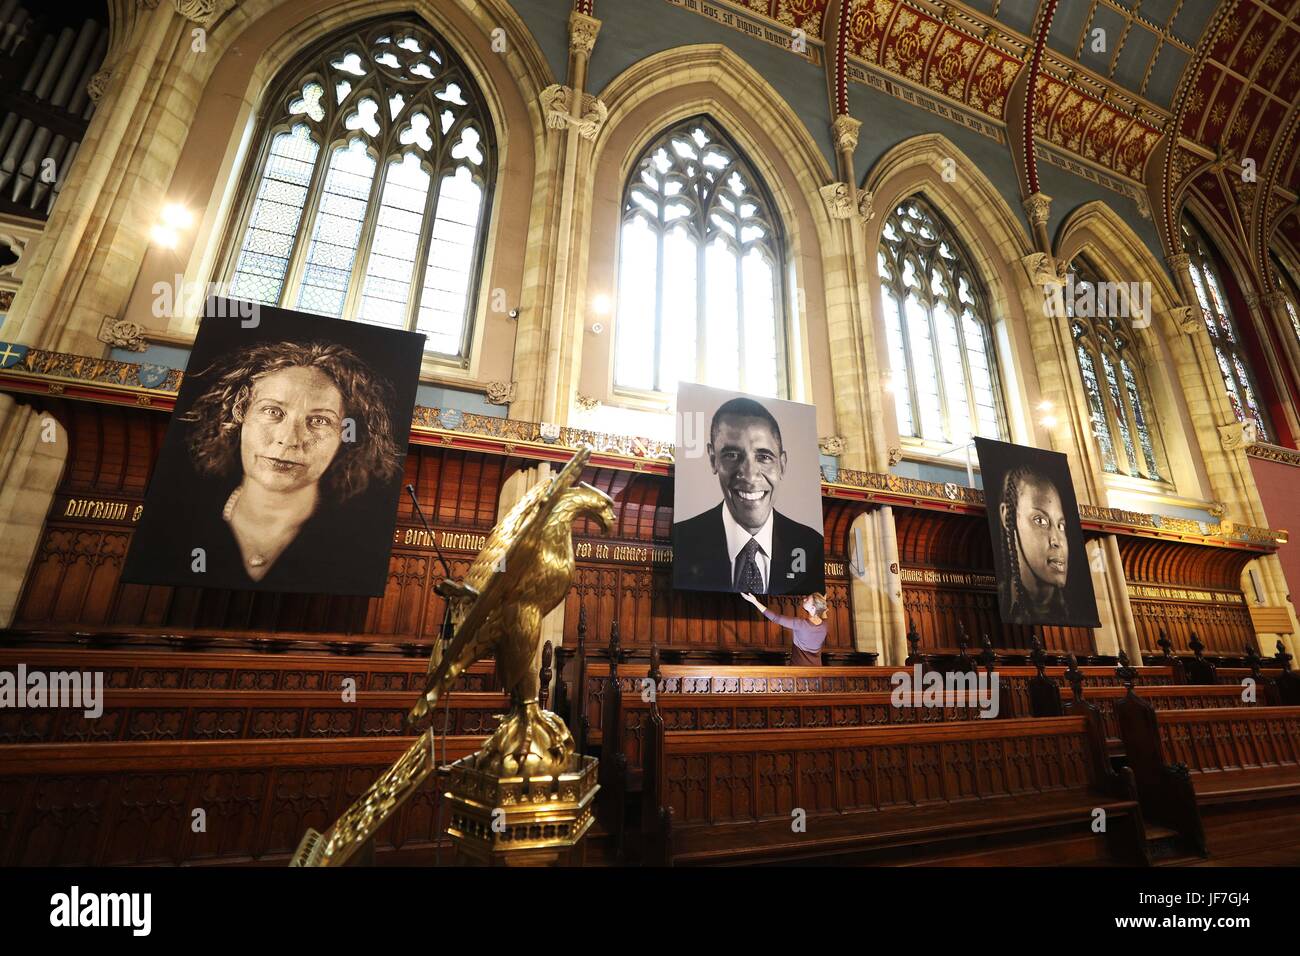 Letzte Anpassungen werden auf die erste Kunstausstellung in St. CuthbertÕs Chapel in Ushaw in Durham, sechs zwei Meter hohe Wandteppich Porträts von hyper-realistischen Amerikaners Chuck Close kuratiert werden. Stockfoto